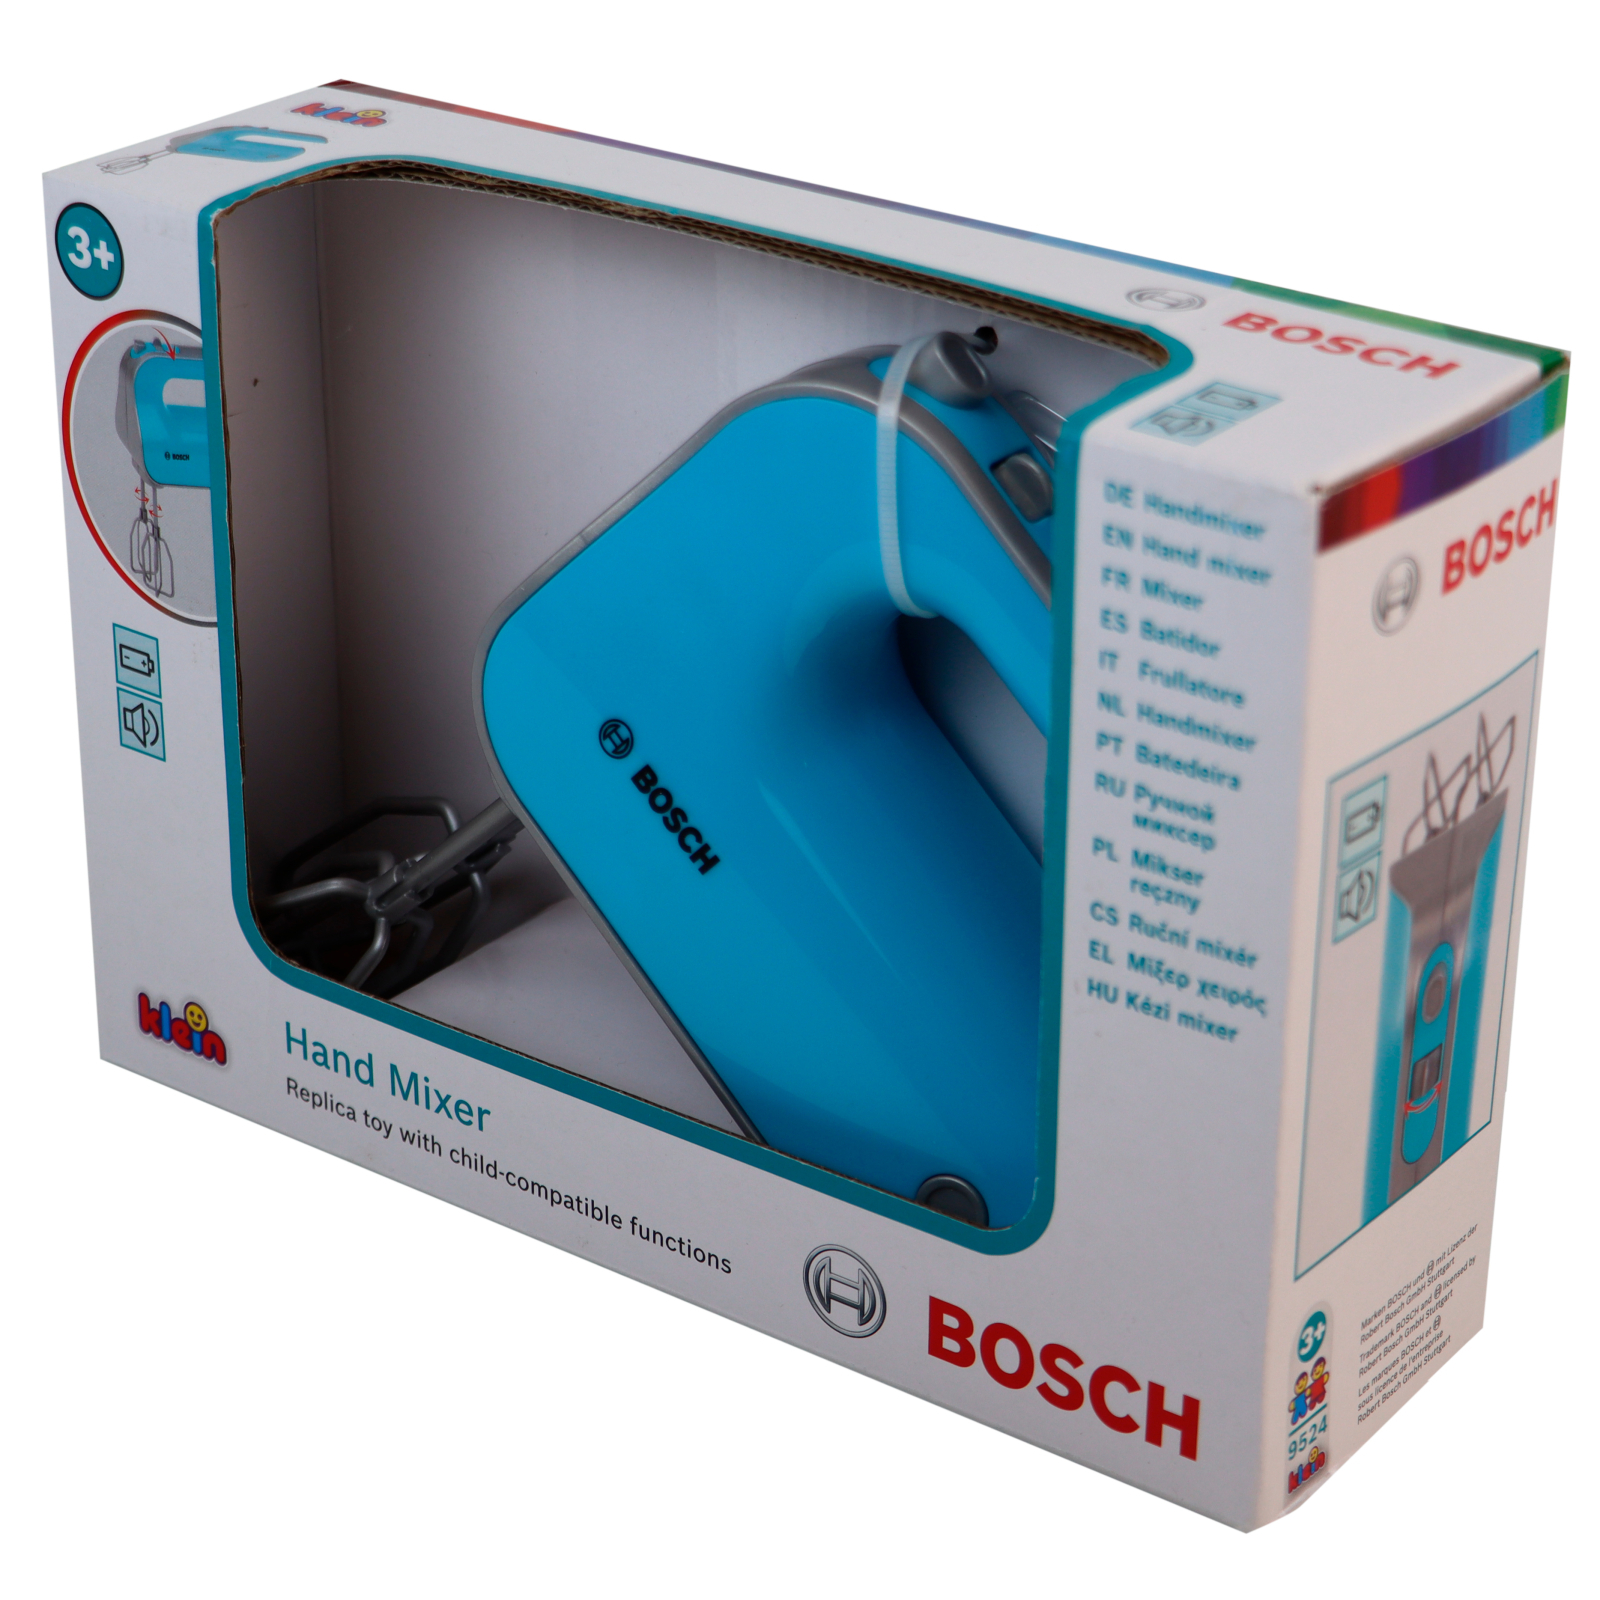 Игровой набор Bosch Ручной миксер бирюзовый (9524) изображение 3